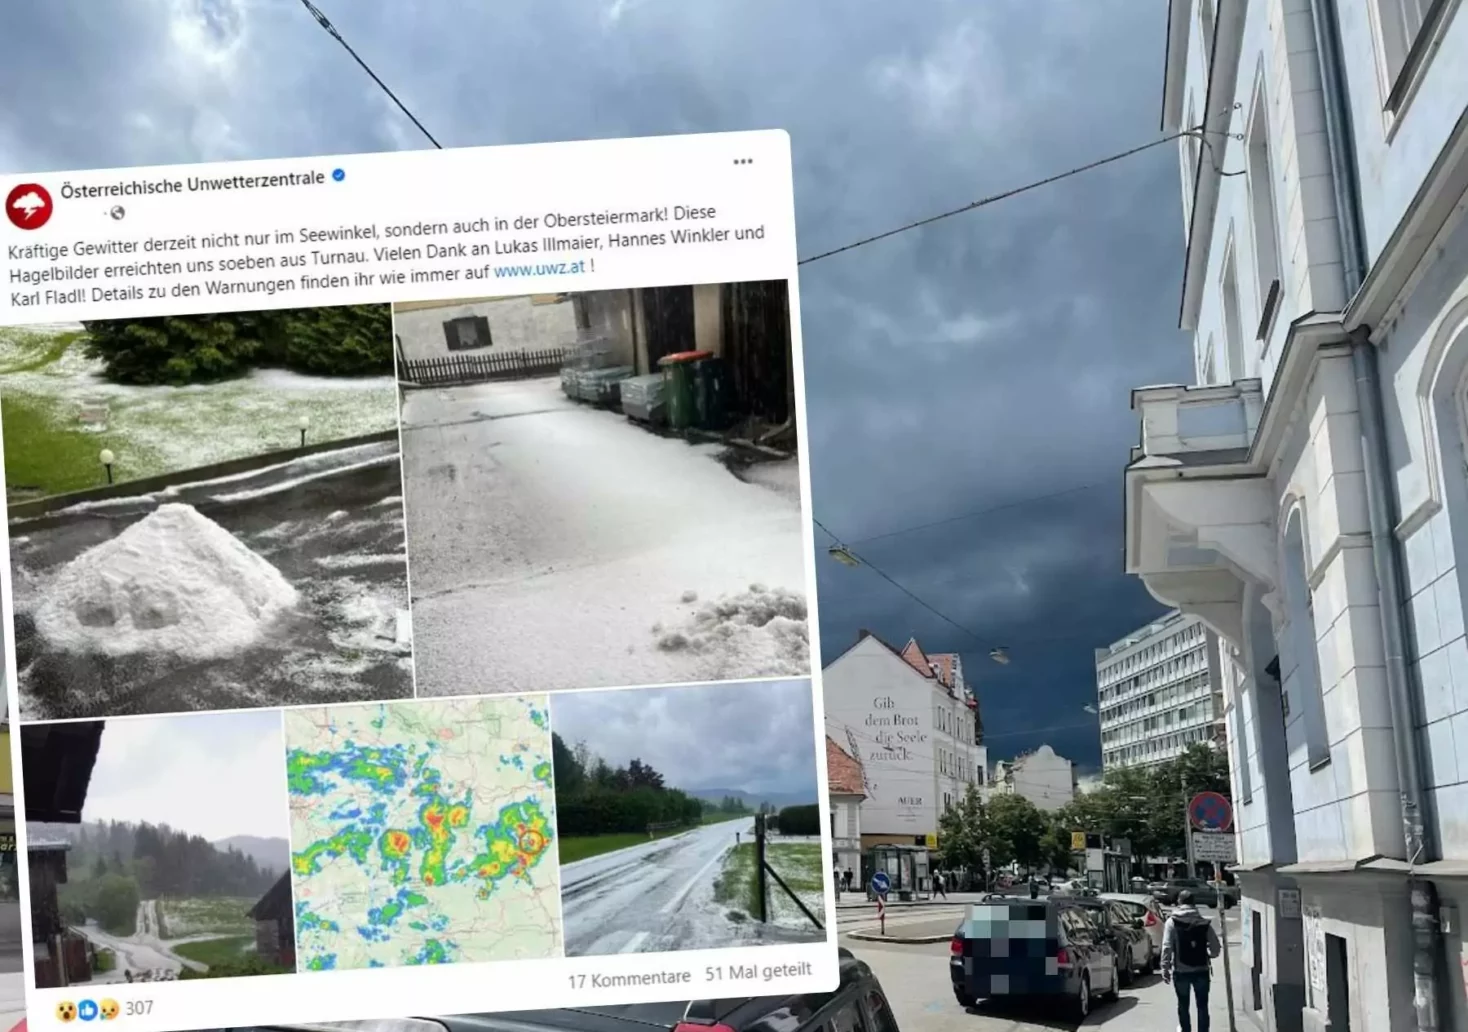 Foto in Beitrag von 5min.at: Zu sehen ist eine Montage von dem Posting der Unwetterzentrale und einem Foto von Graz mit dunklen Wolken.